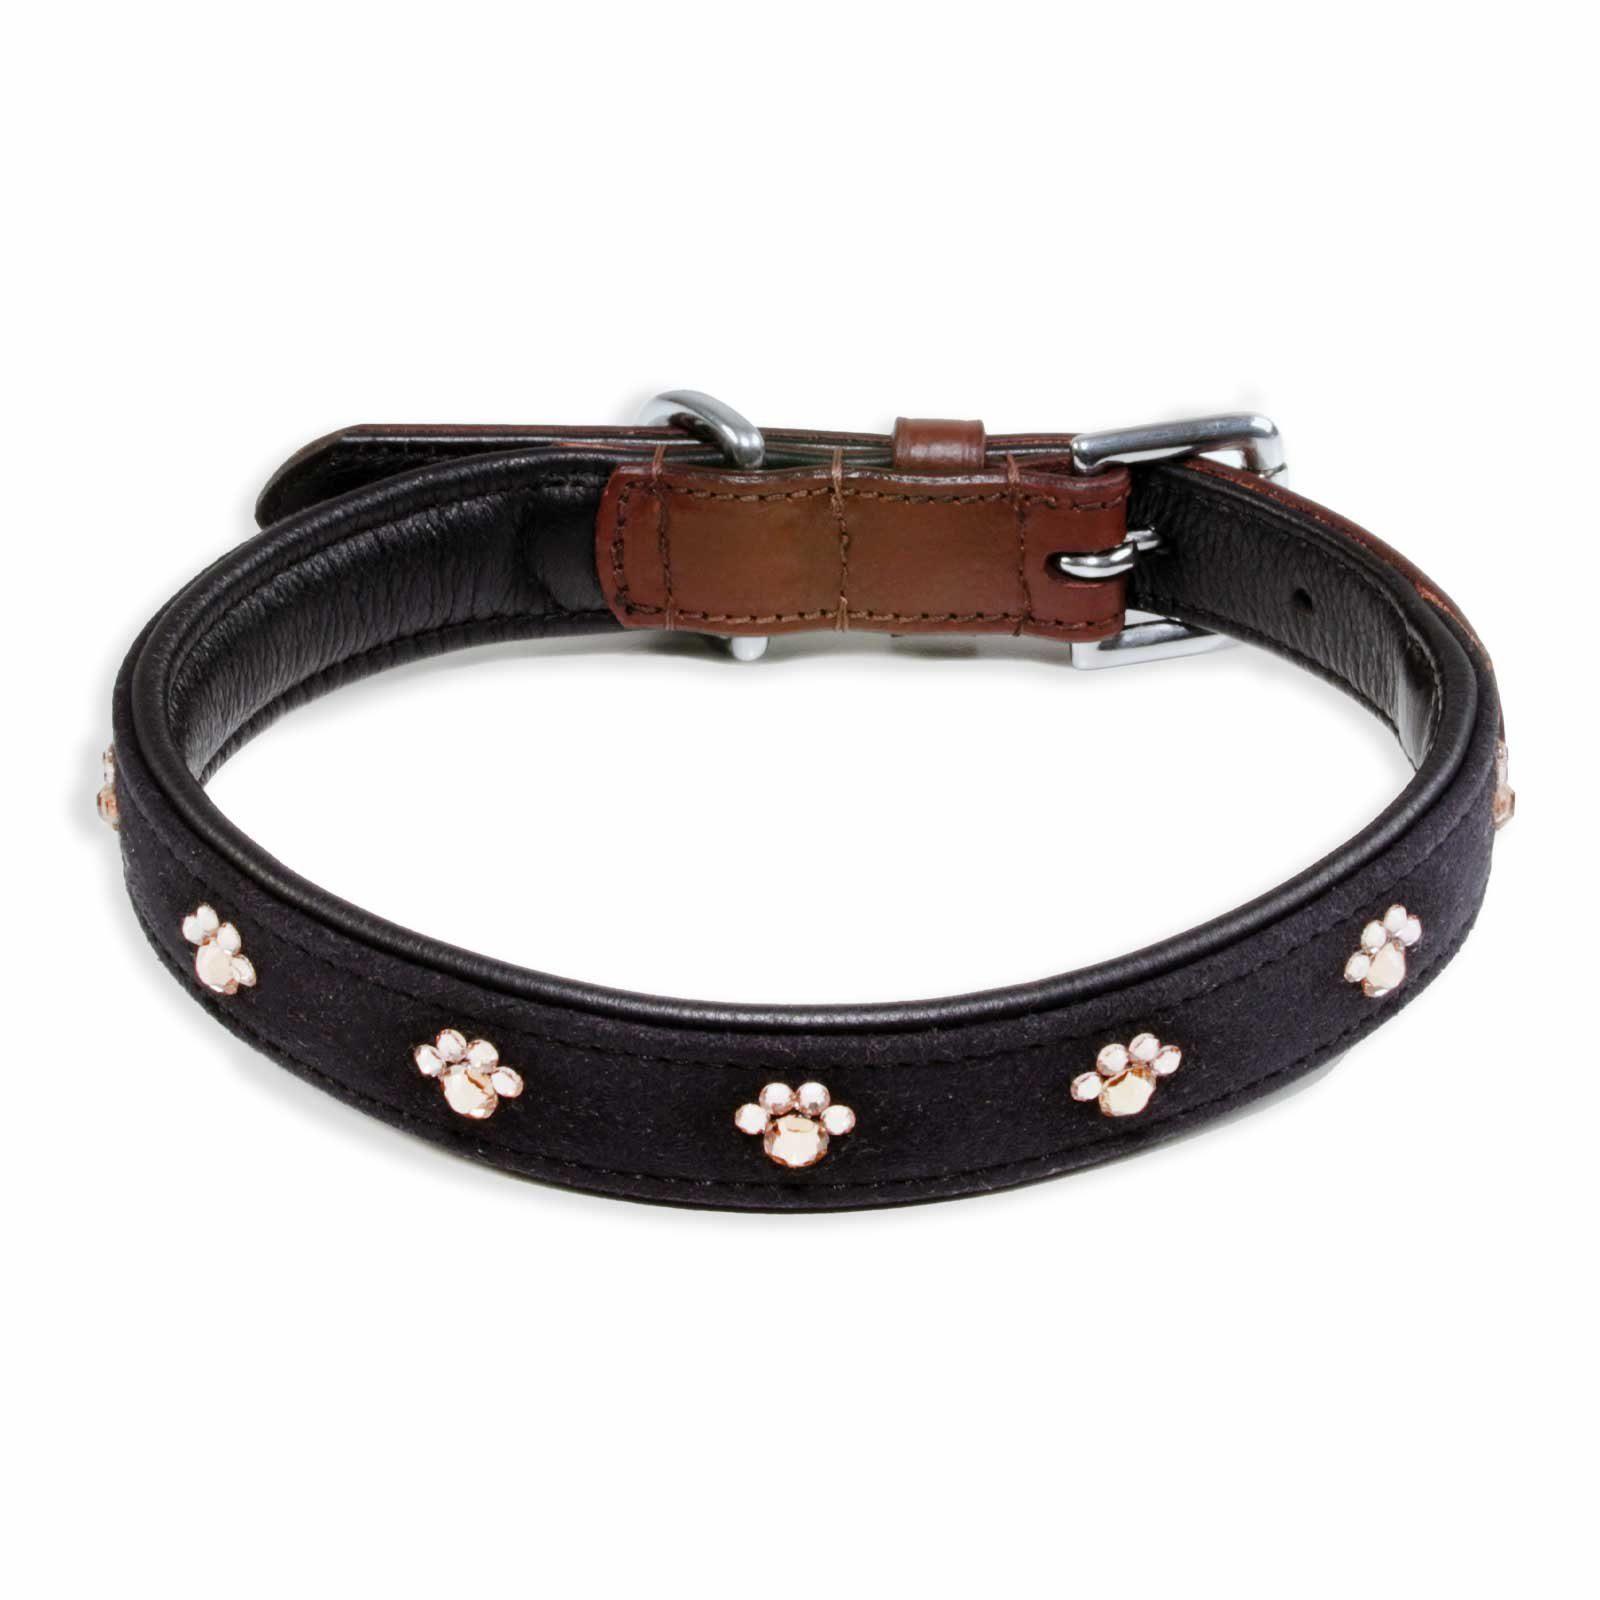 Monkimau Hunde-Halsband Hundehalsband Leder Halsband Hund braun schwarz mit Pfoten Swarovski, Leder